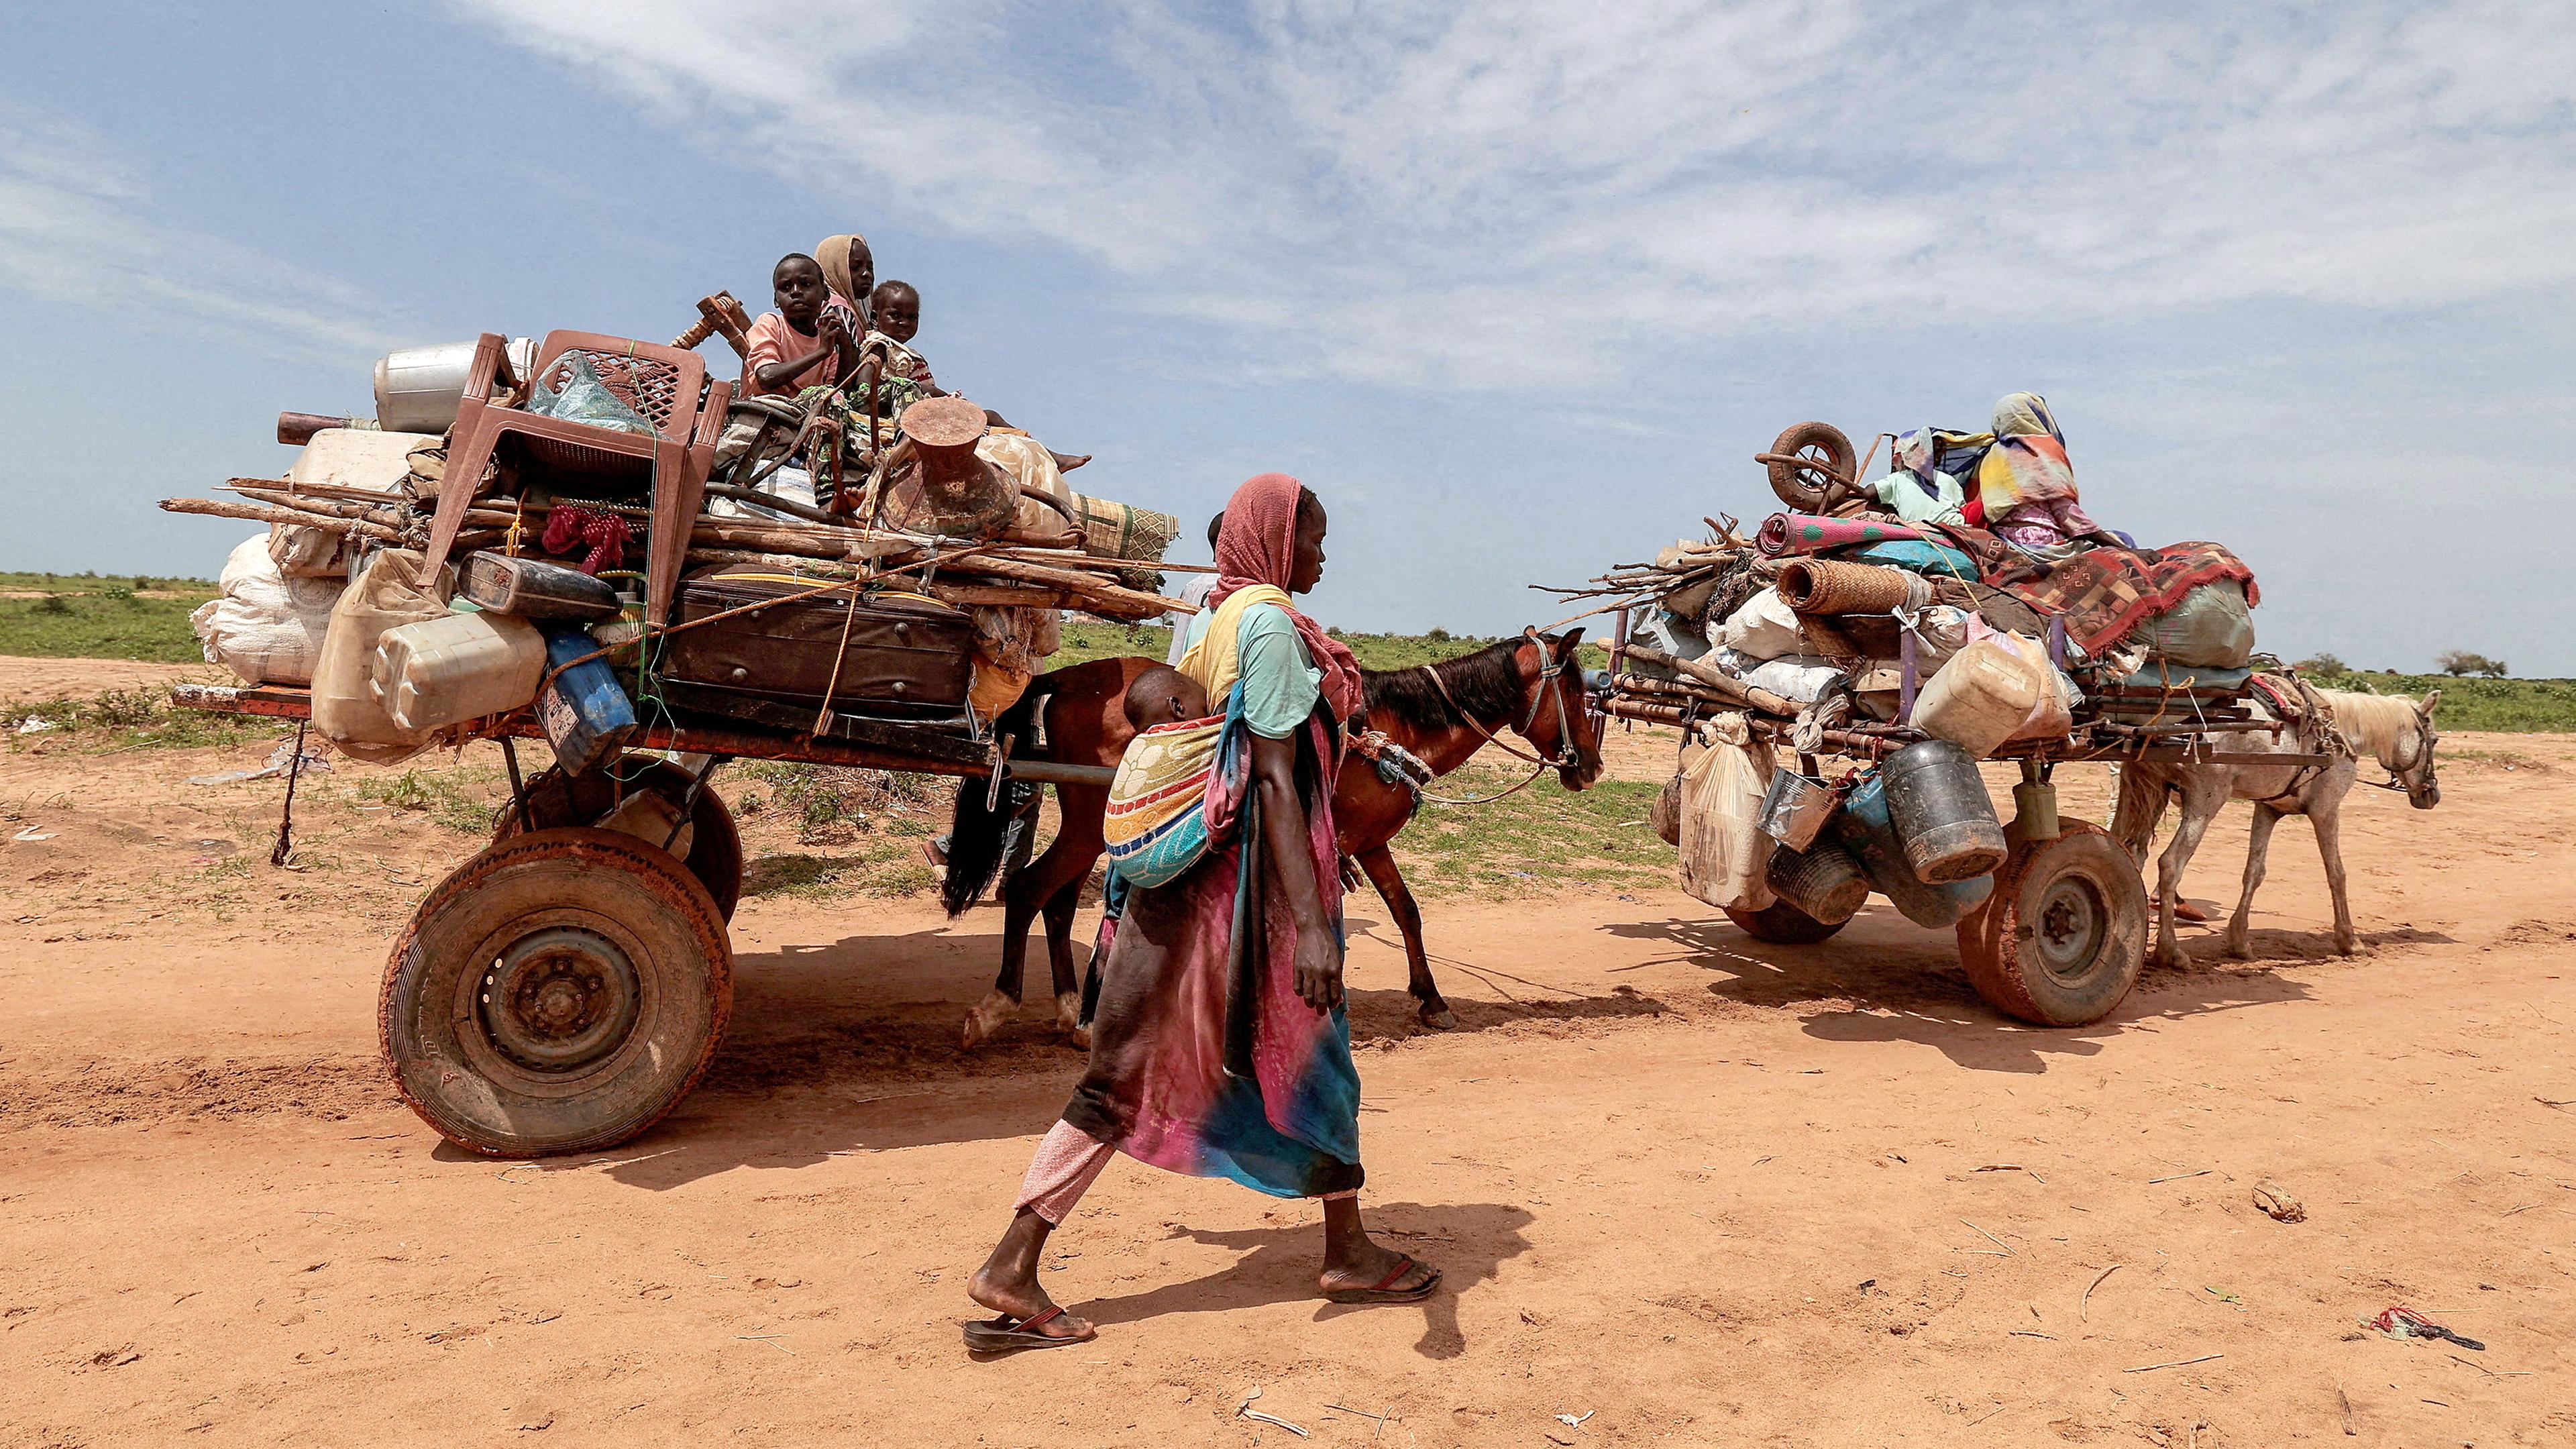 Eine sudanesische Frau, die vor dem Konflikt in Murnei in der sudanesischen Region Darfur geflohen ist, überquert die Grenze zwischen dem Sudan und dem Tschad in Adre